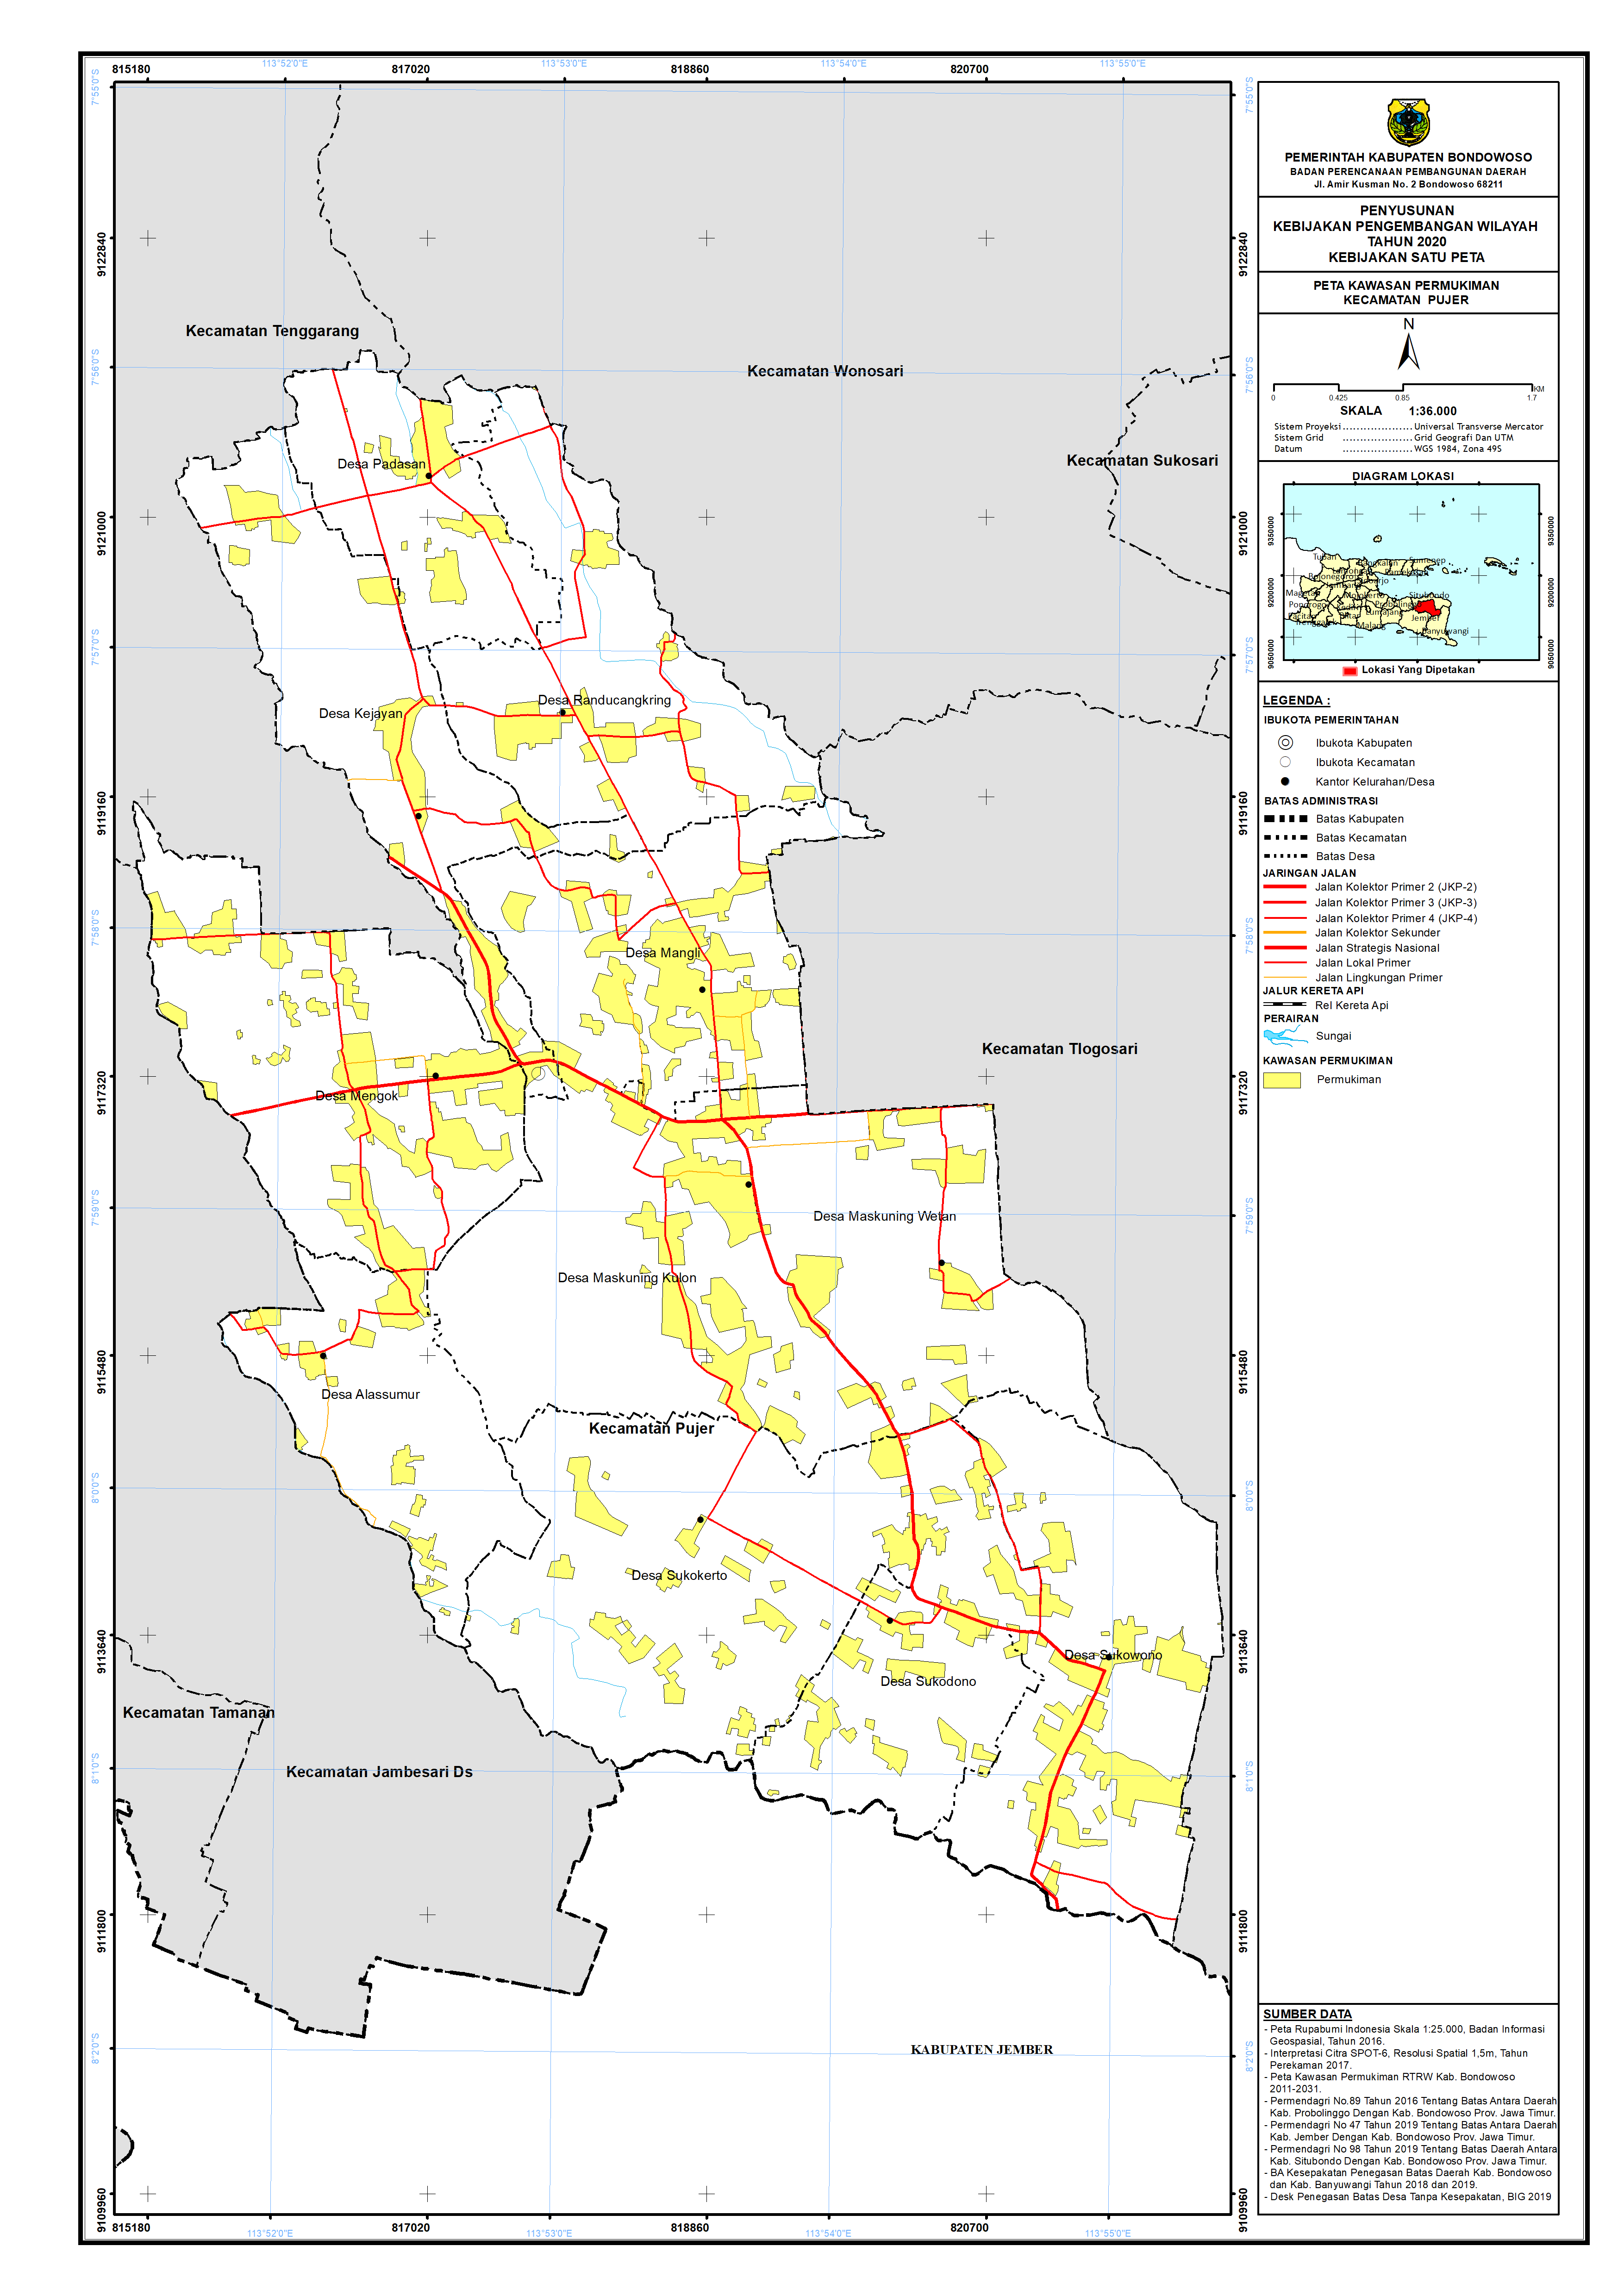 Peta Kawasan Permukiman Kecamatan Pujer.png